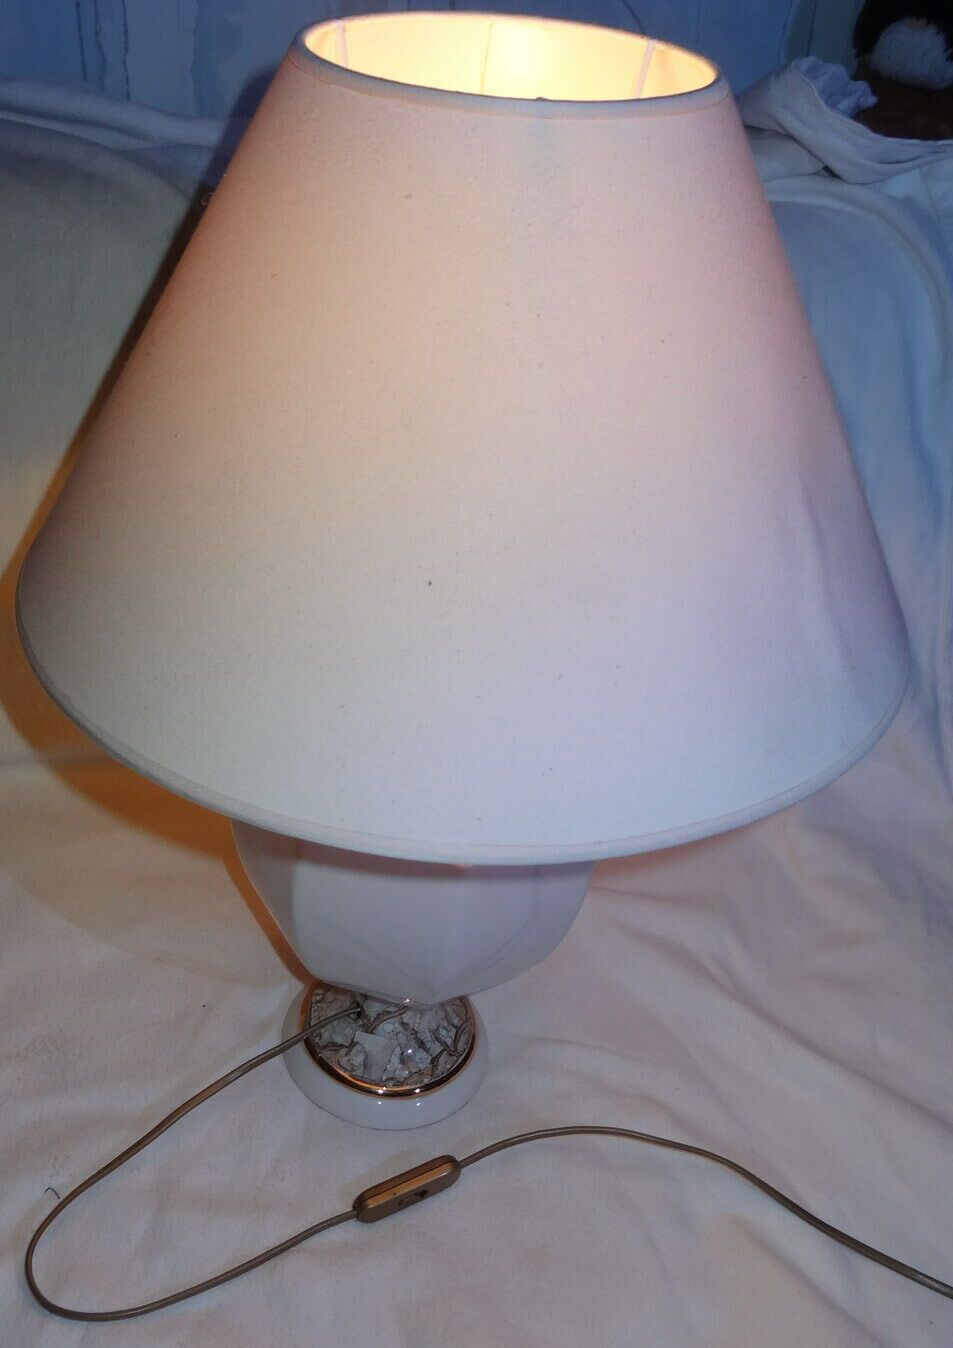 D Stehlampe Tischlampe Porzellan Stoffschirm 56 40x16,7H  18 15  12 20 40 16 einwandfrei erhalten